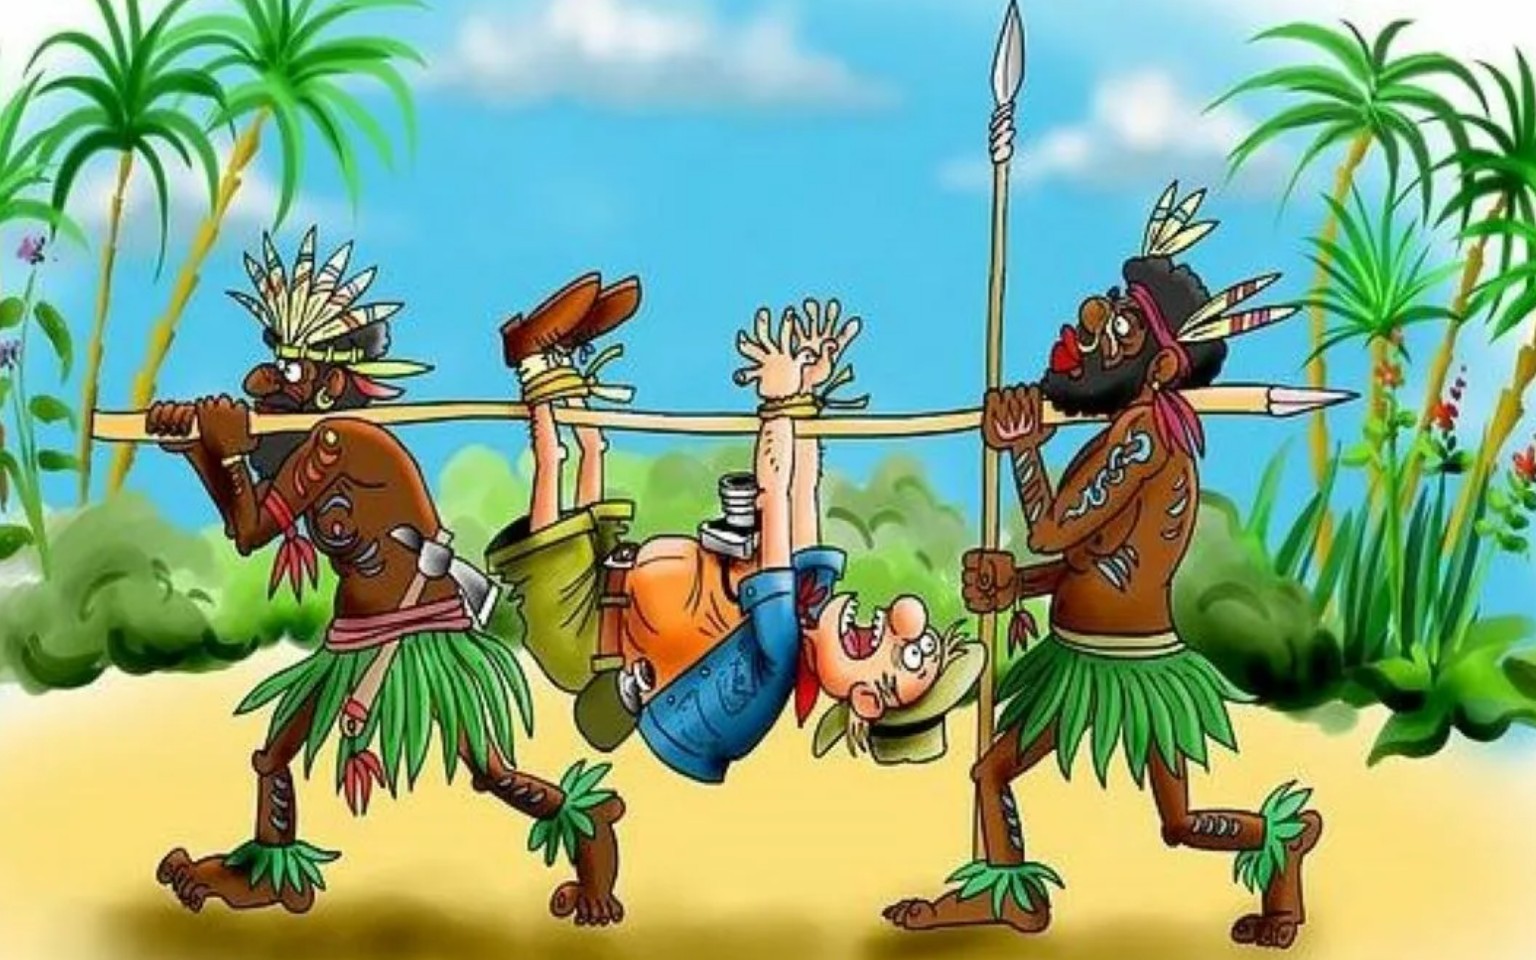 Добродушный людоед. Карикатуры про аборигенов. Папуасы новой Гвинеи.